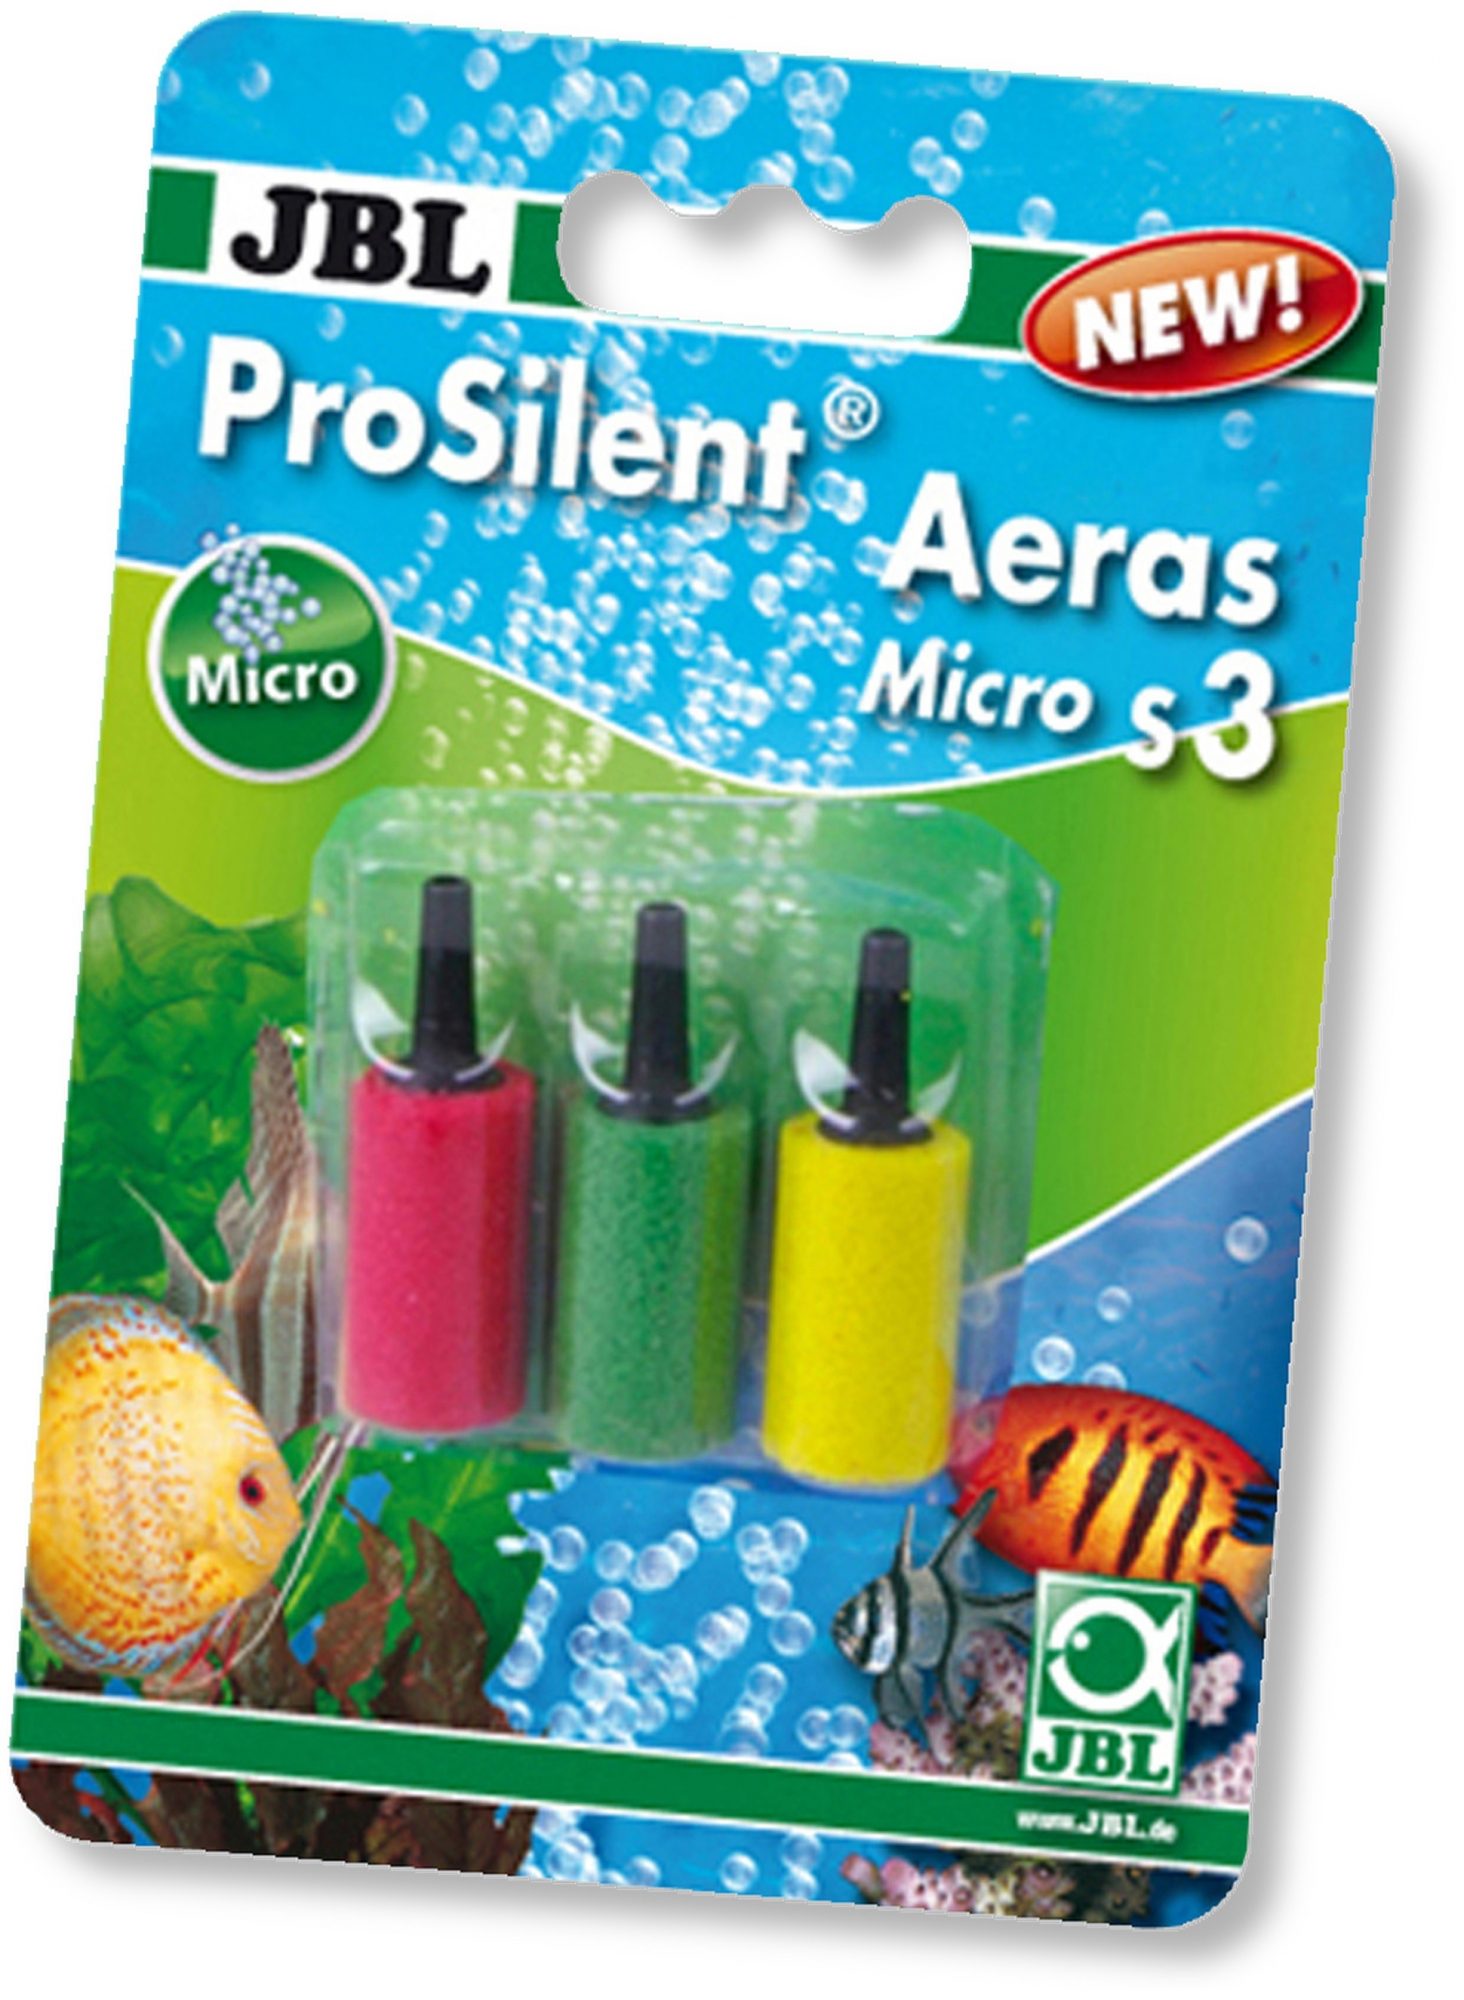 JBL ProSilent Aeras Micro S3, Piedras difusoras de colores para burbujas de aire finas